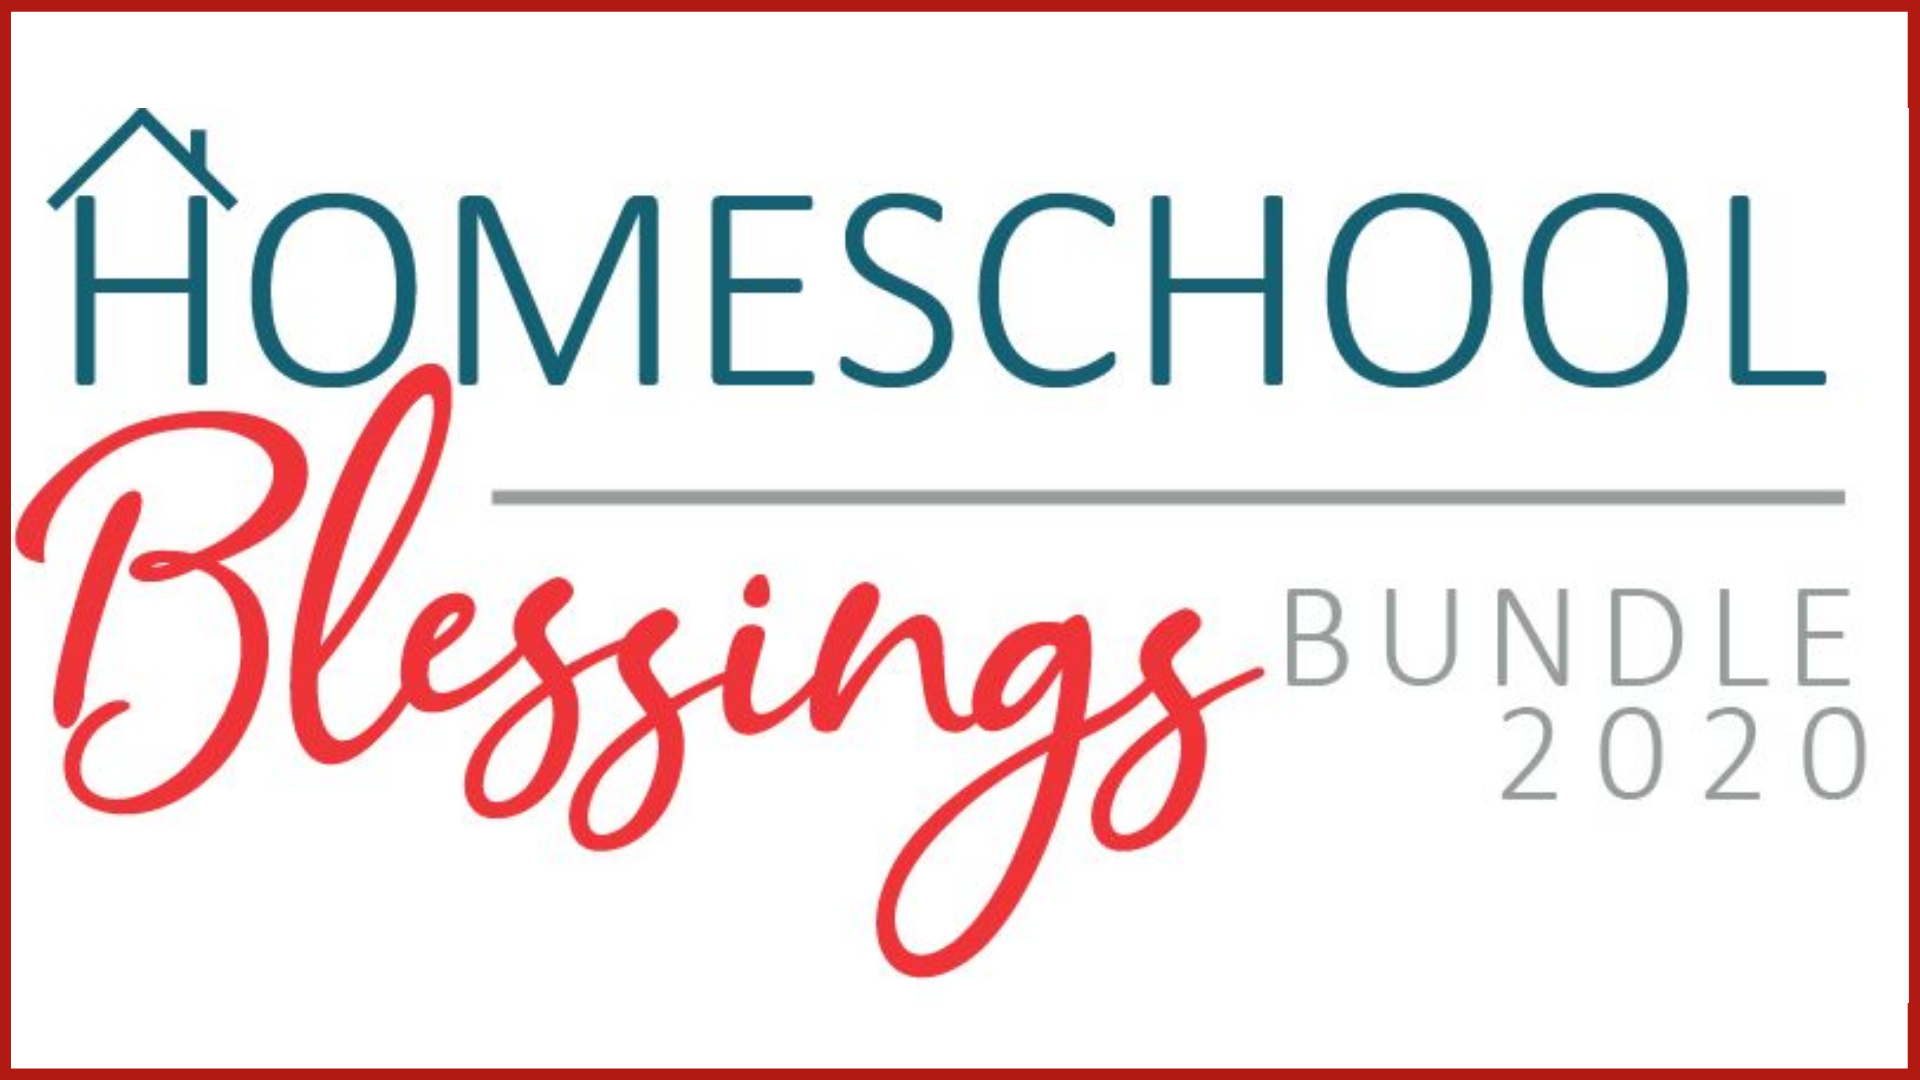 ﻿Homeschool Blessings Bundle 2020